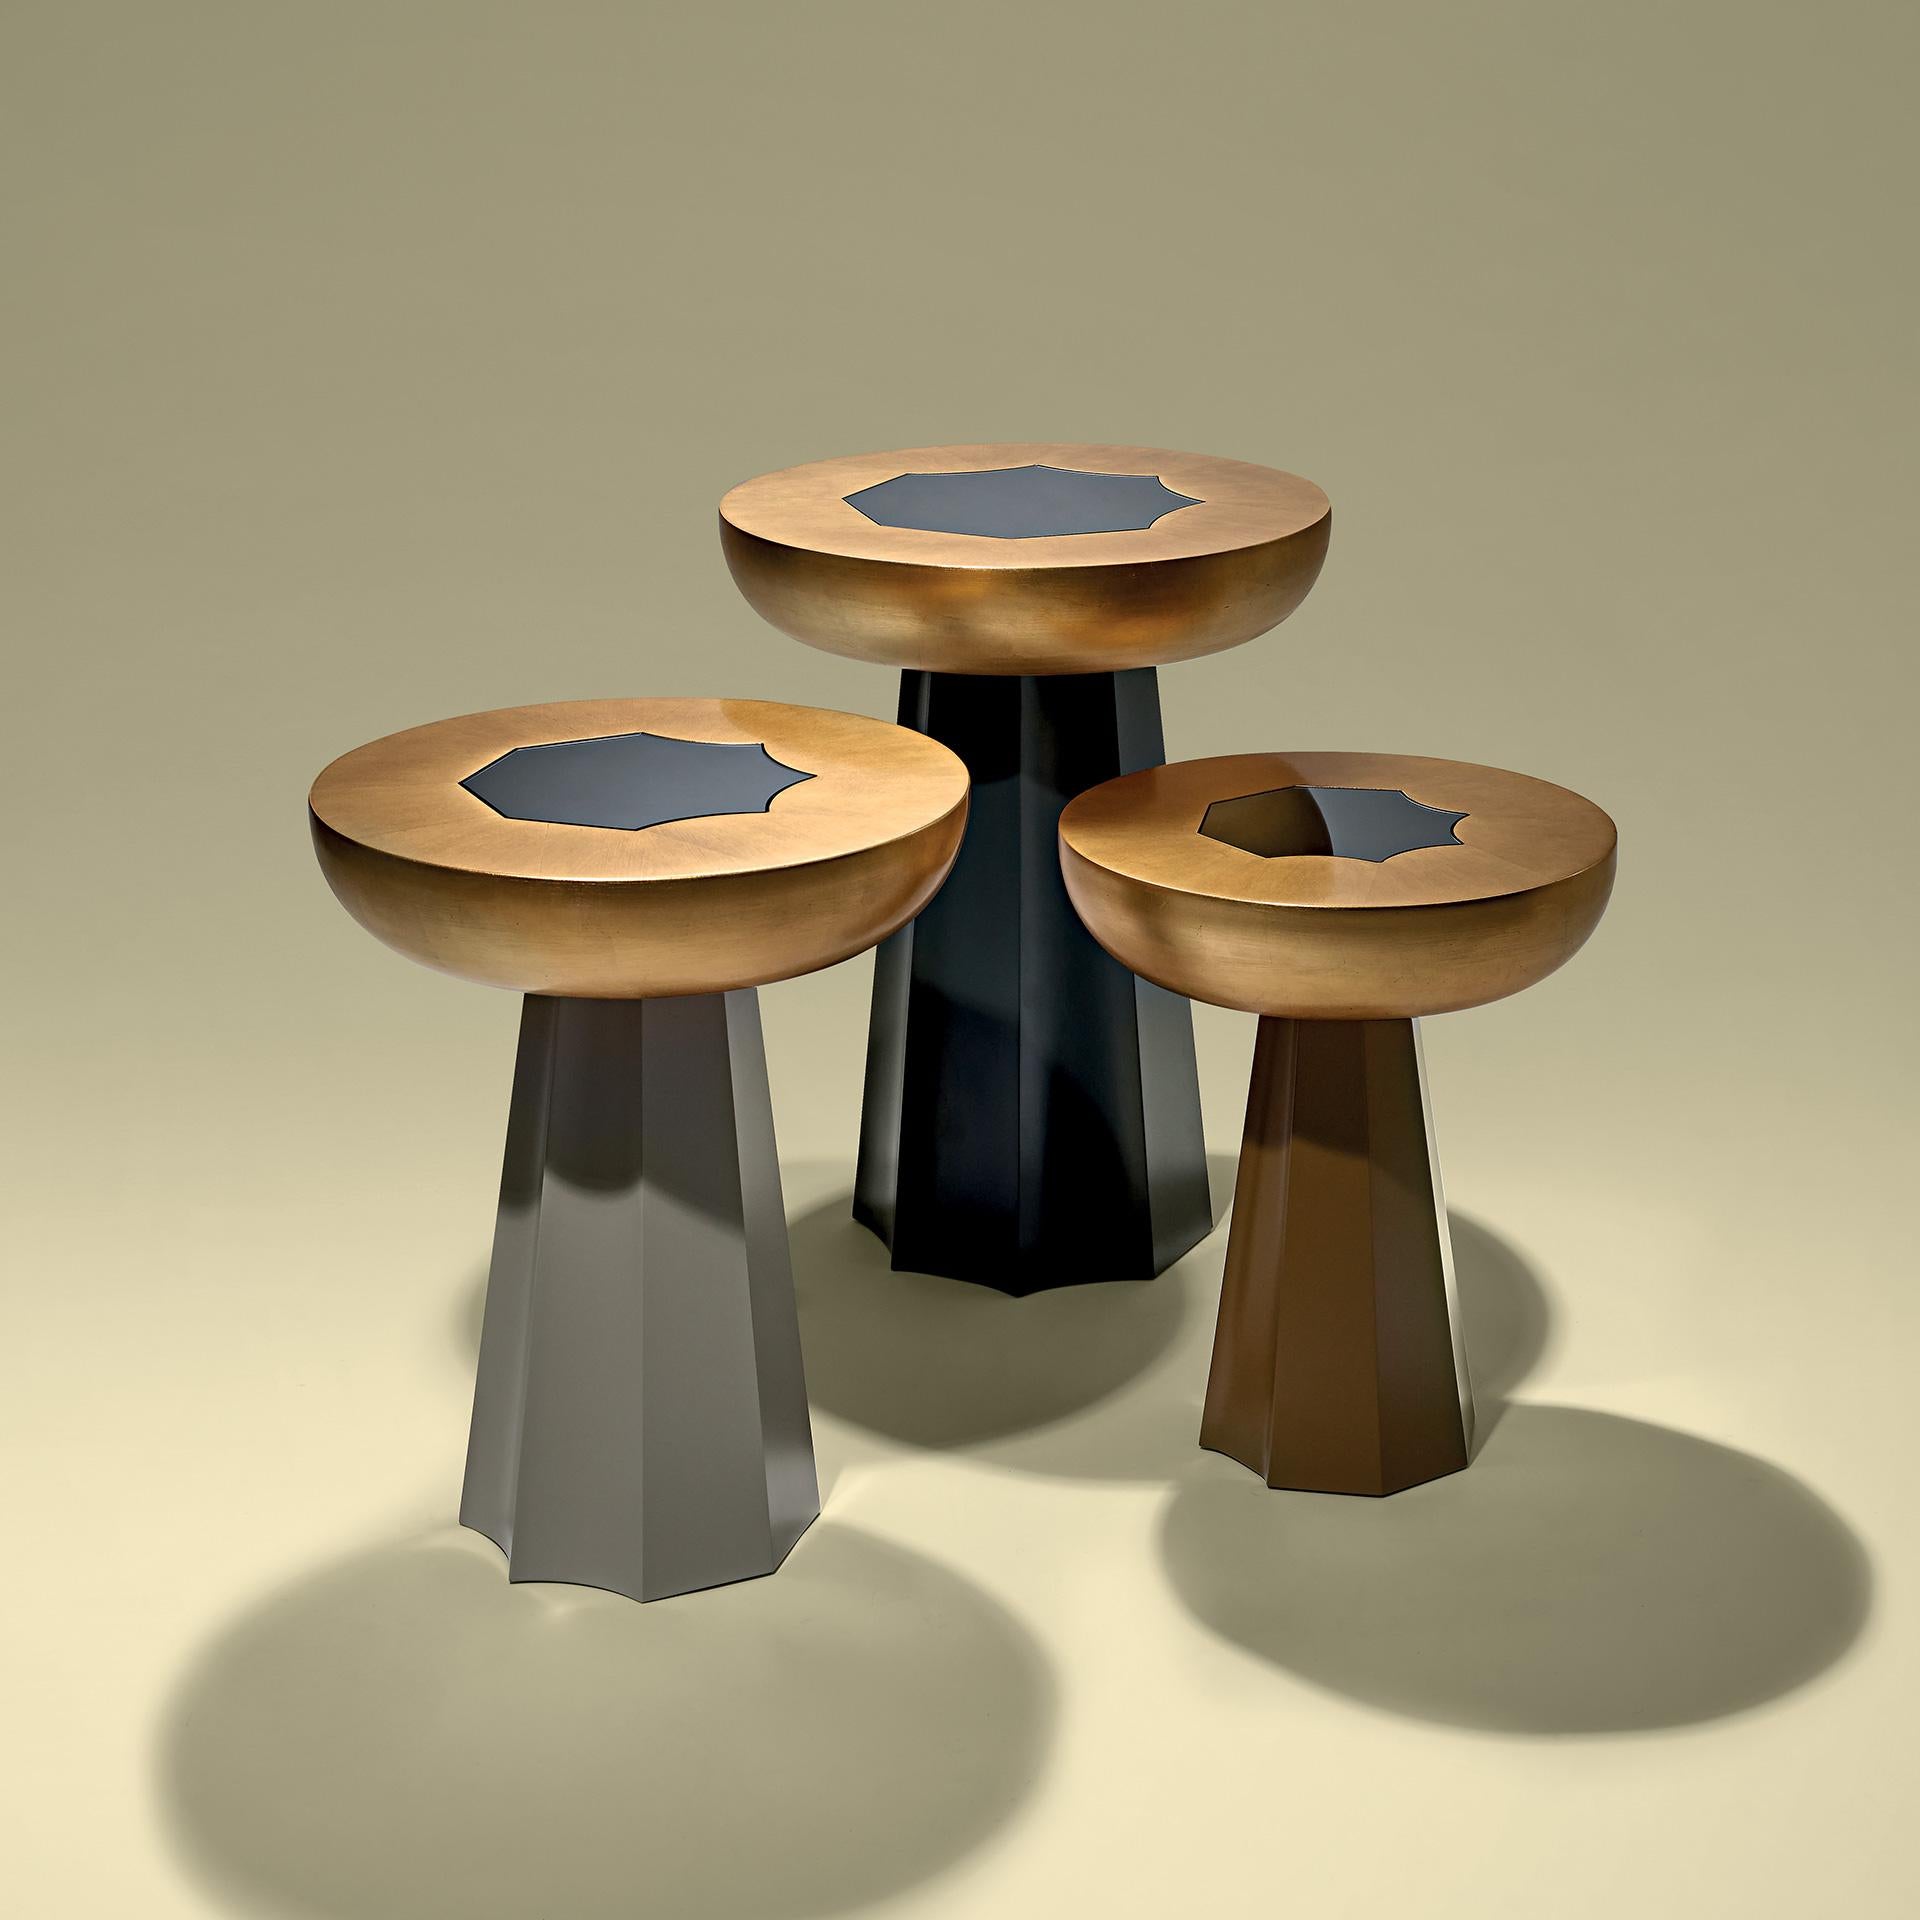 Tisch in Blattgold und grauem Spiegel und Sockel in Mattlack.

Maßgeschneidert / Anpassbar
Identische Formen mit unterschiedlichen Größen und Ausführungen.
Alle RAL-Farben verfügbar. (Mate / Halbglanz / Glanz)


 